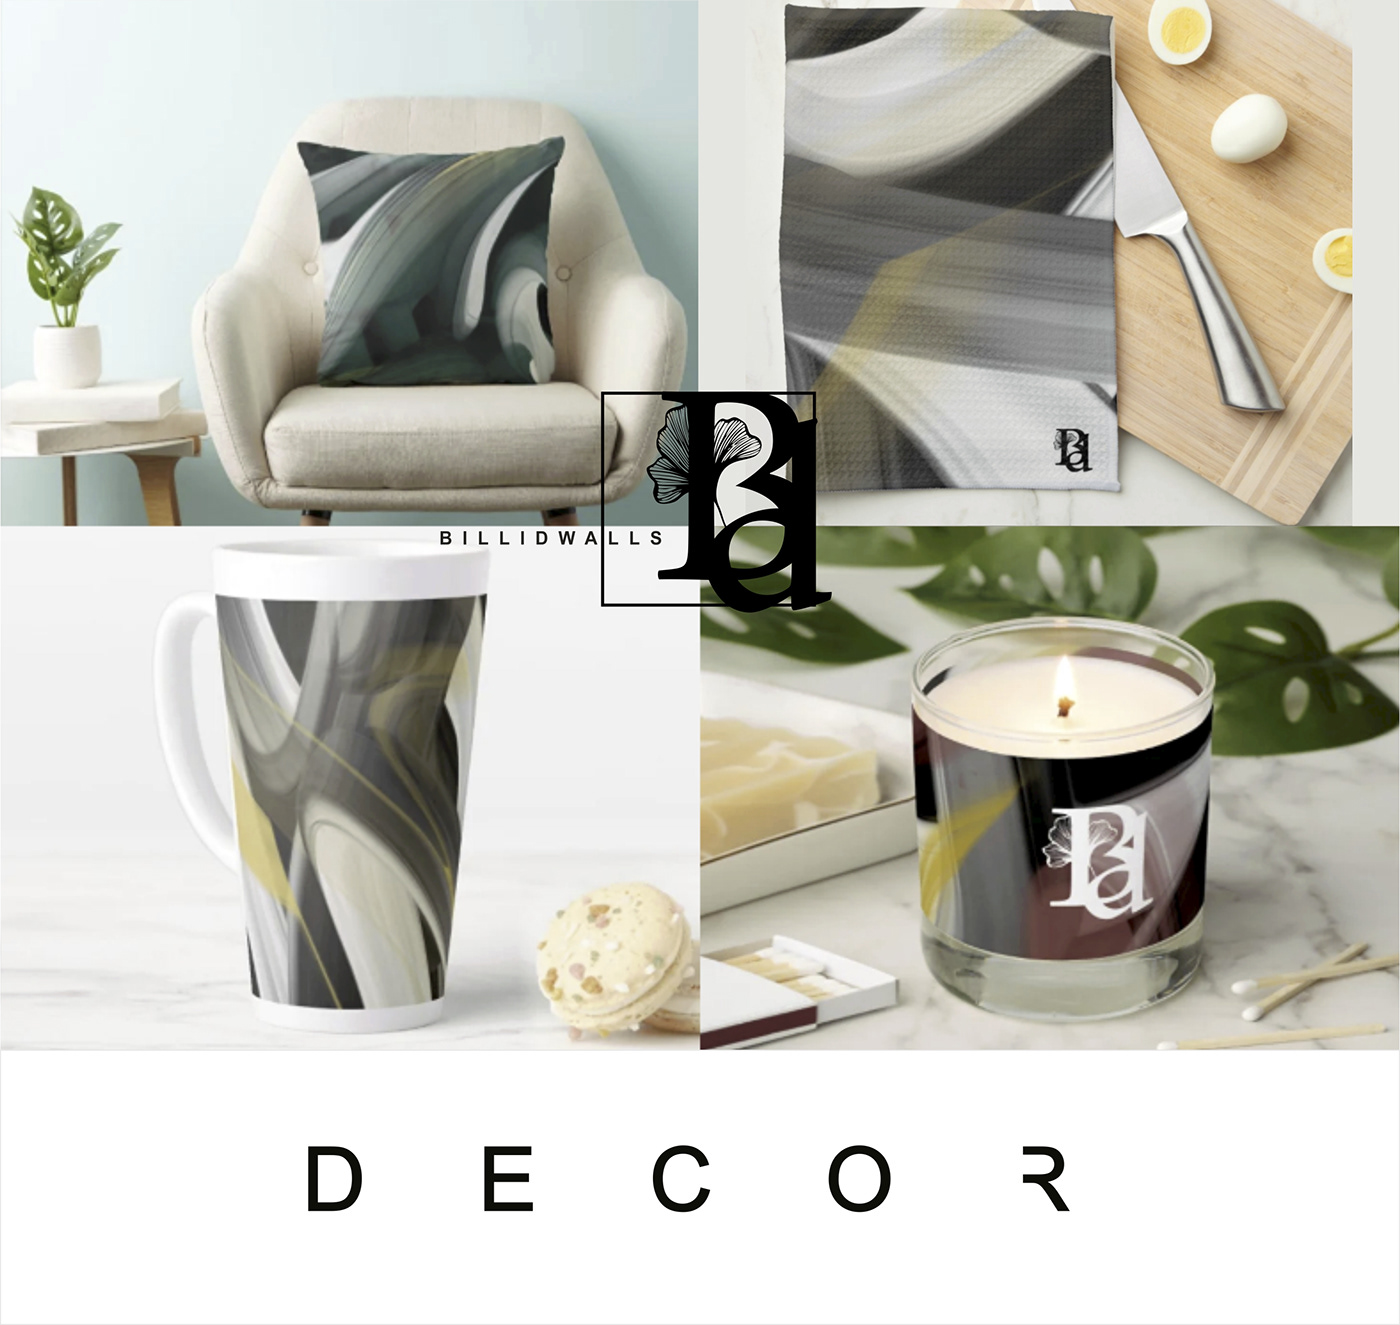 abstract decor home decor home design kitchen design dishes room design contemporary tableware ceramic